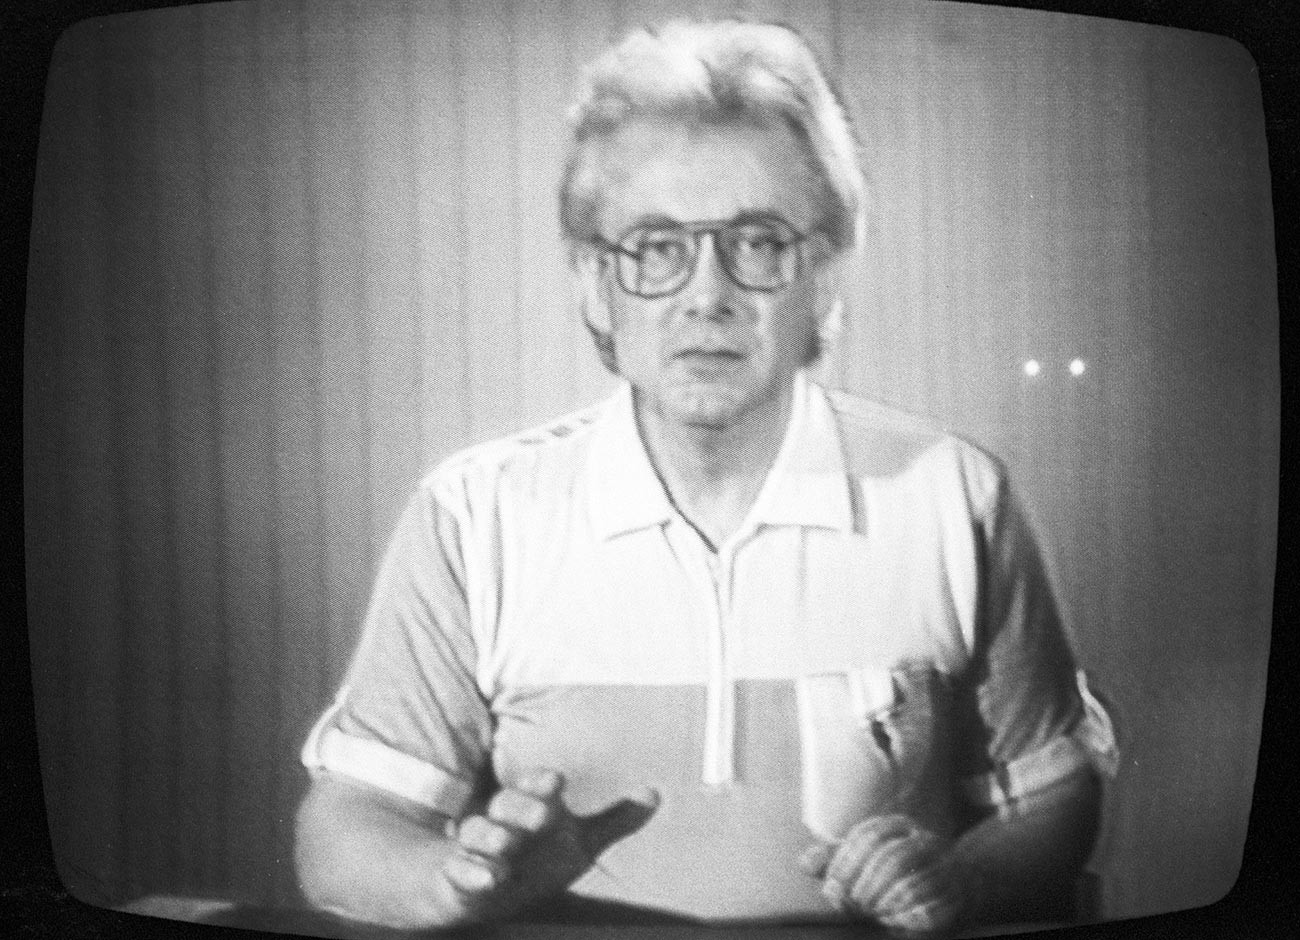 Chumak's program on Soviet TV.